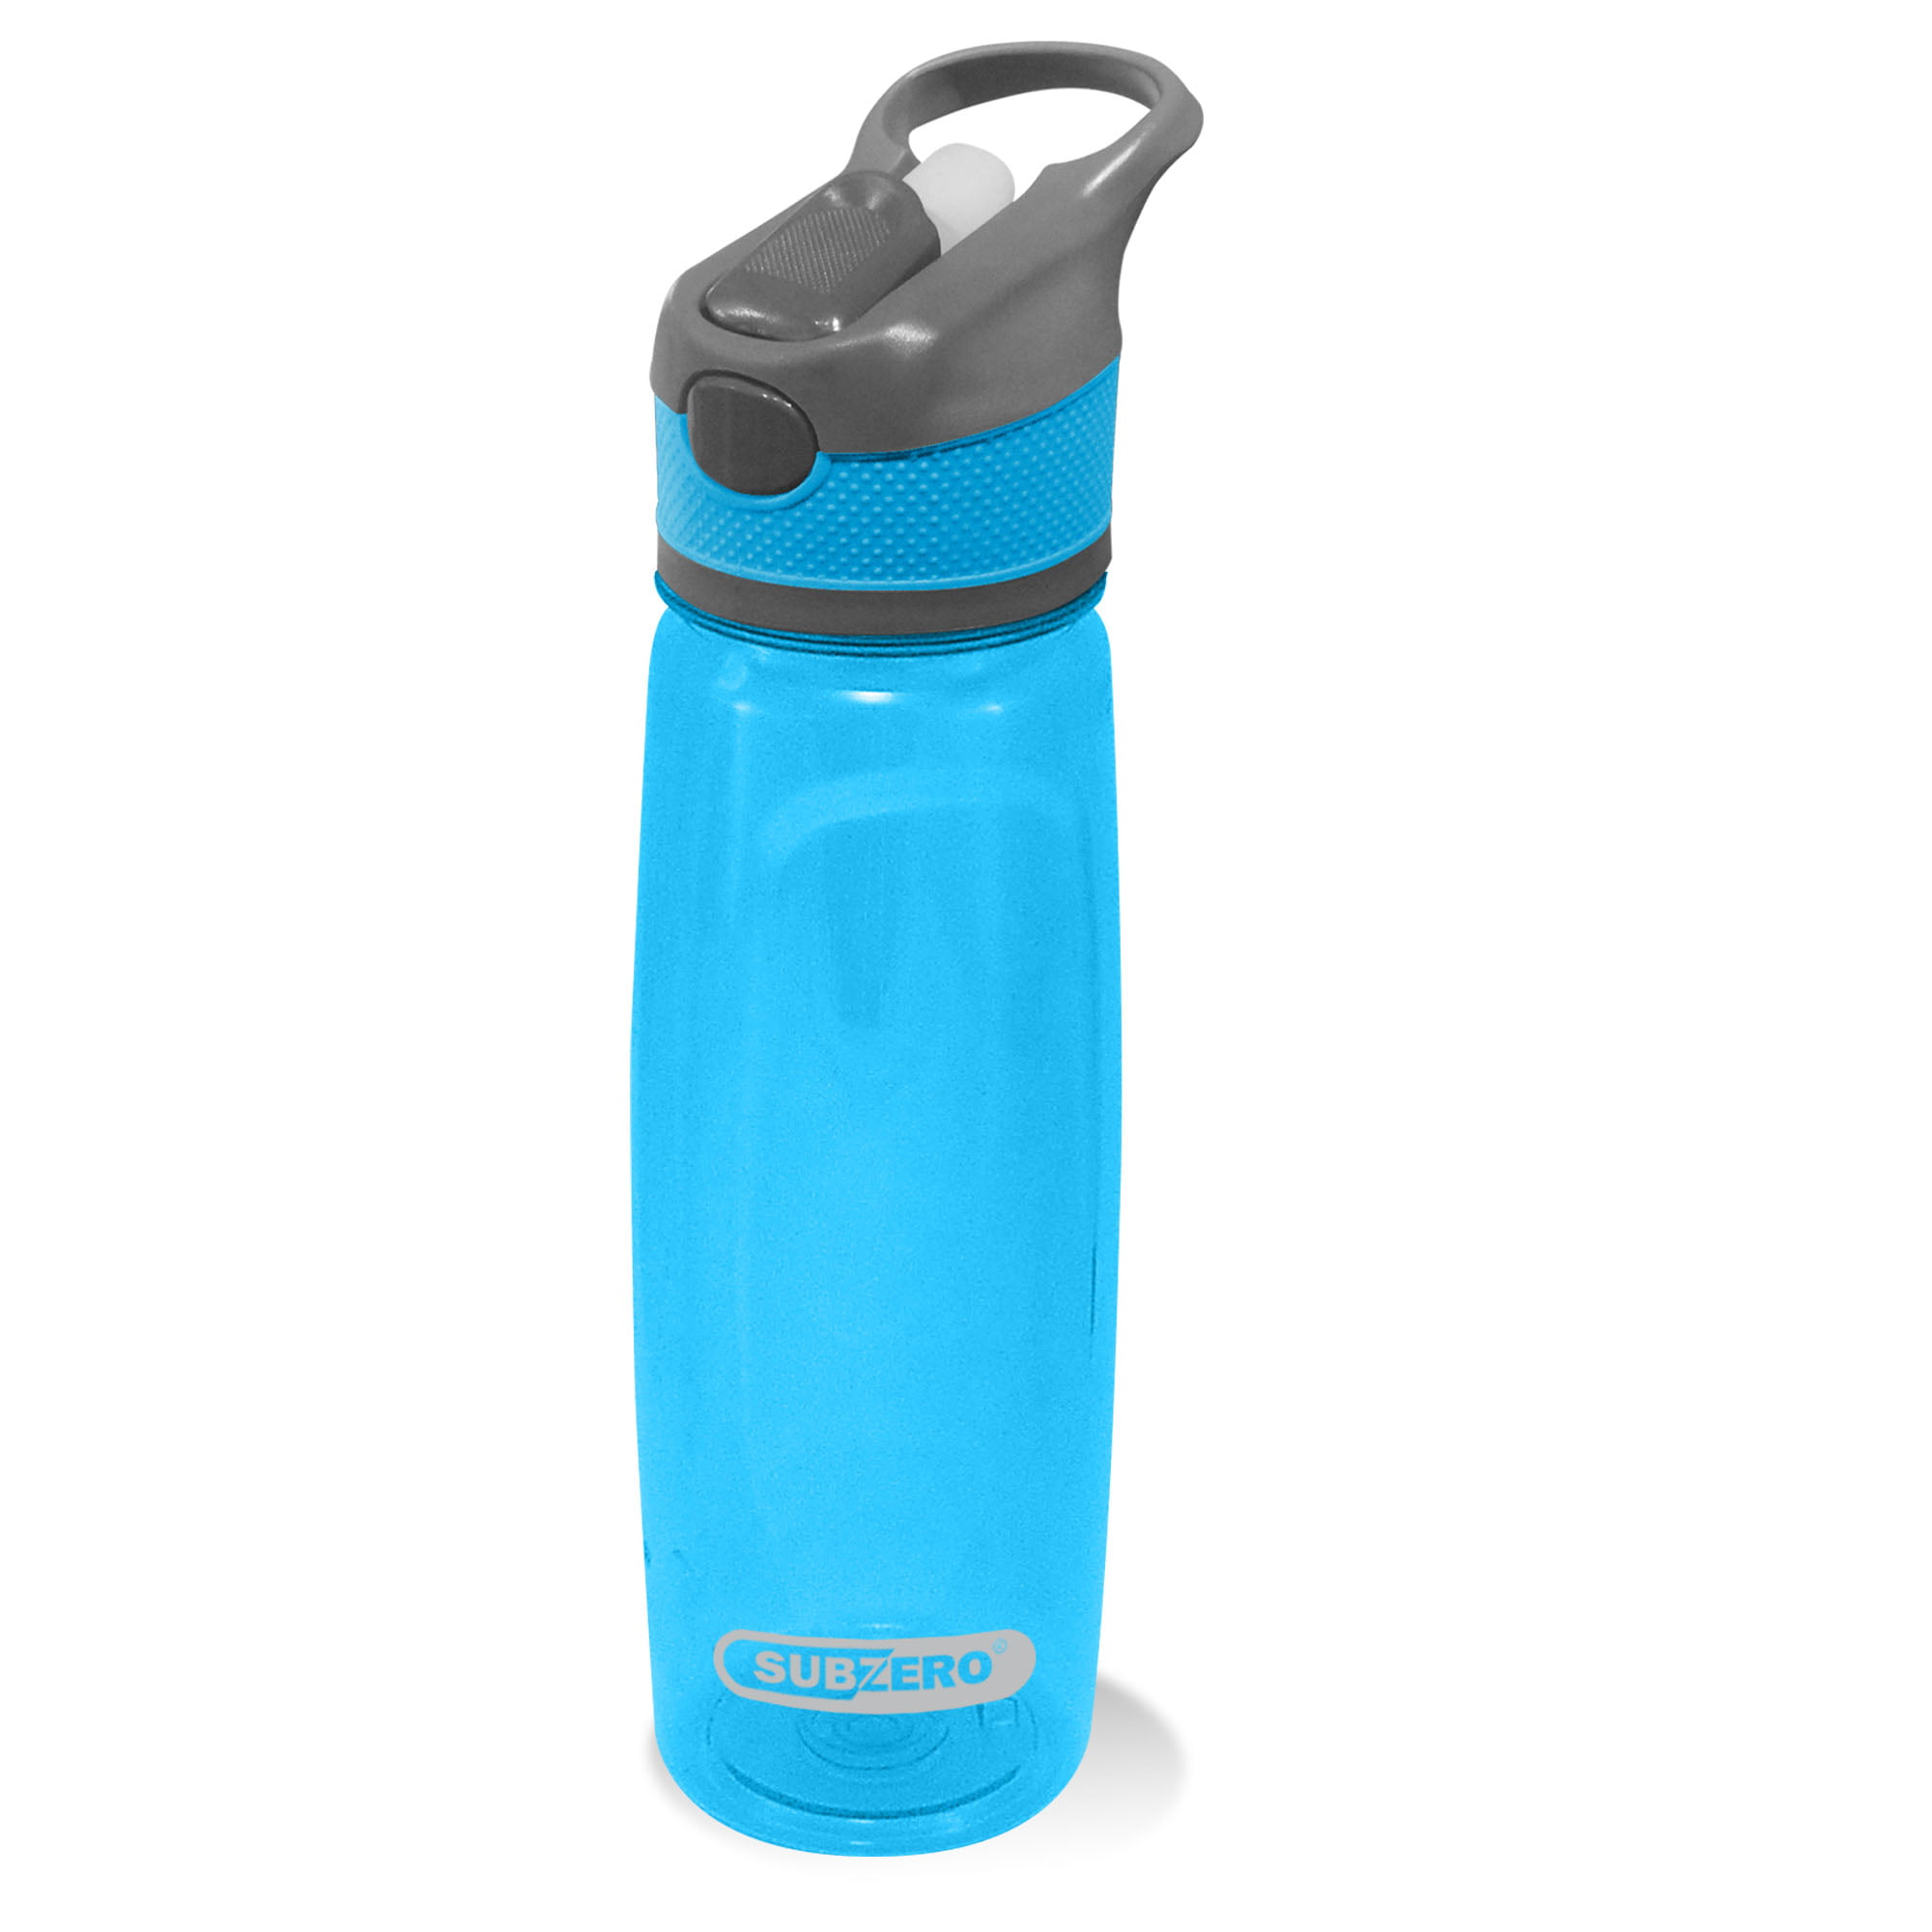 Subzero Tritan Double Wall Water Bottle with Straw